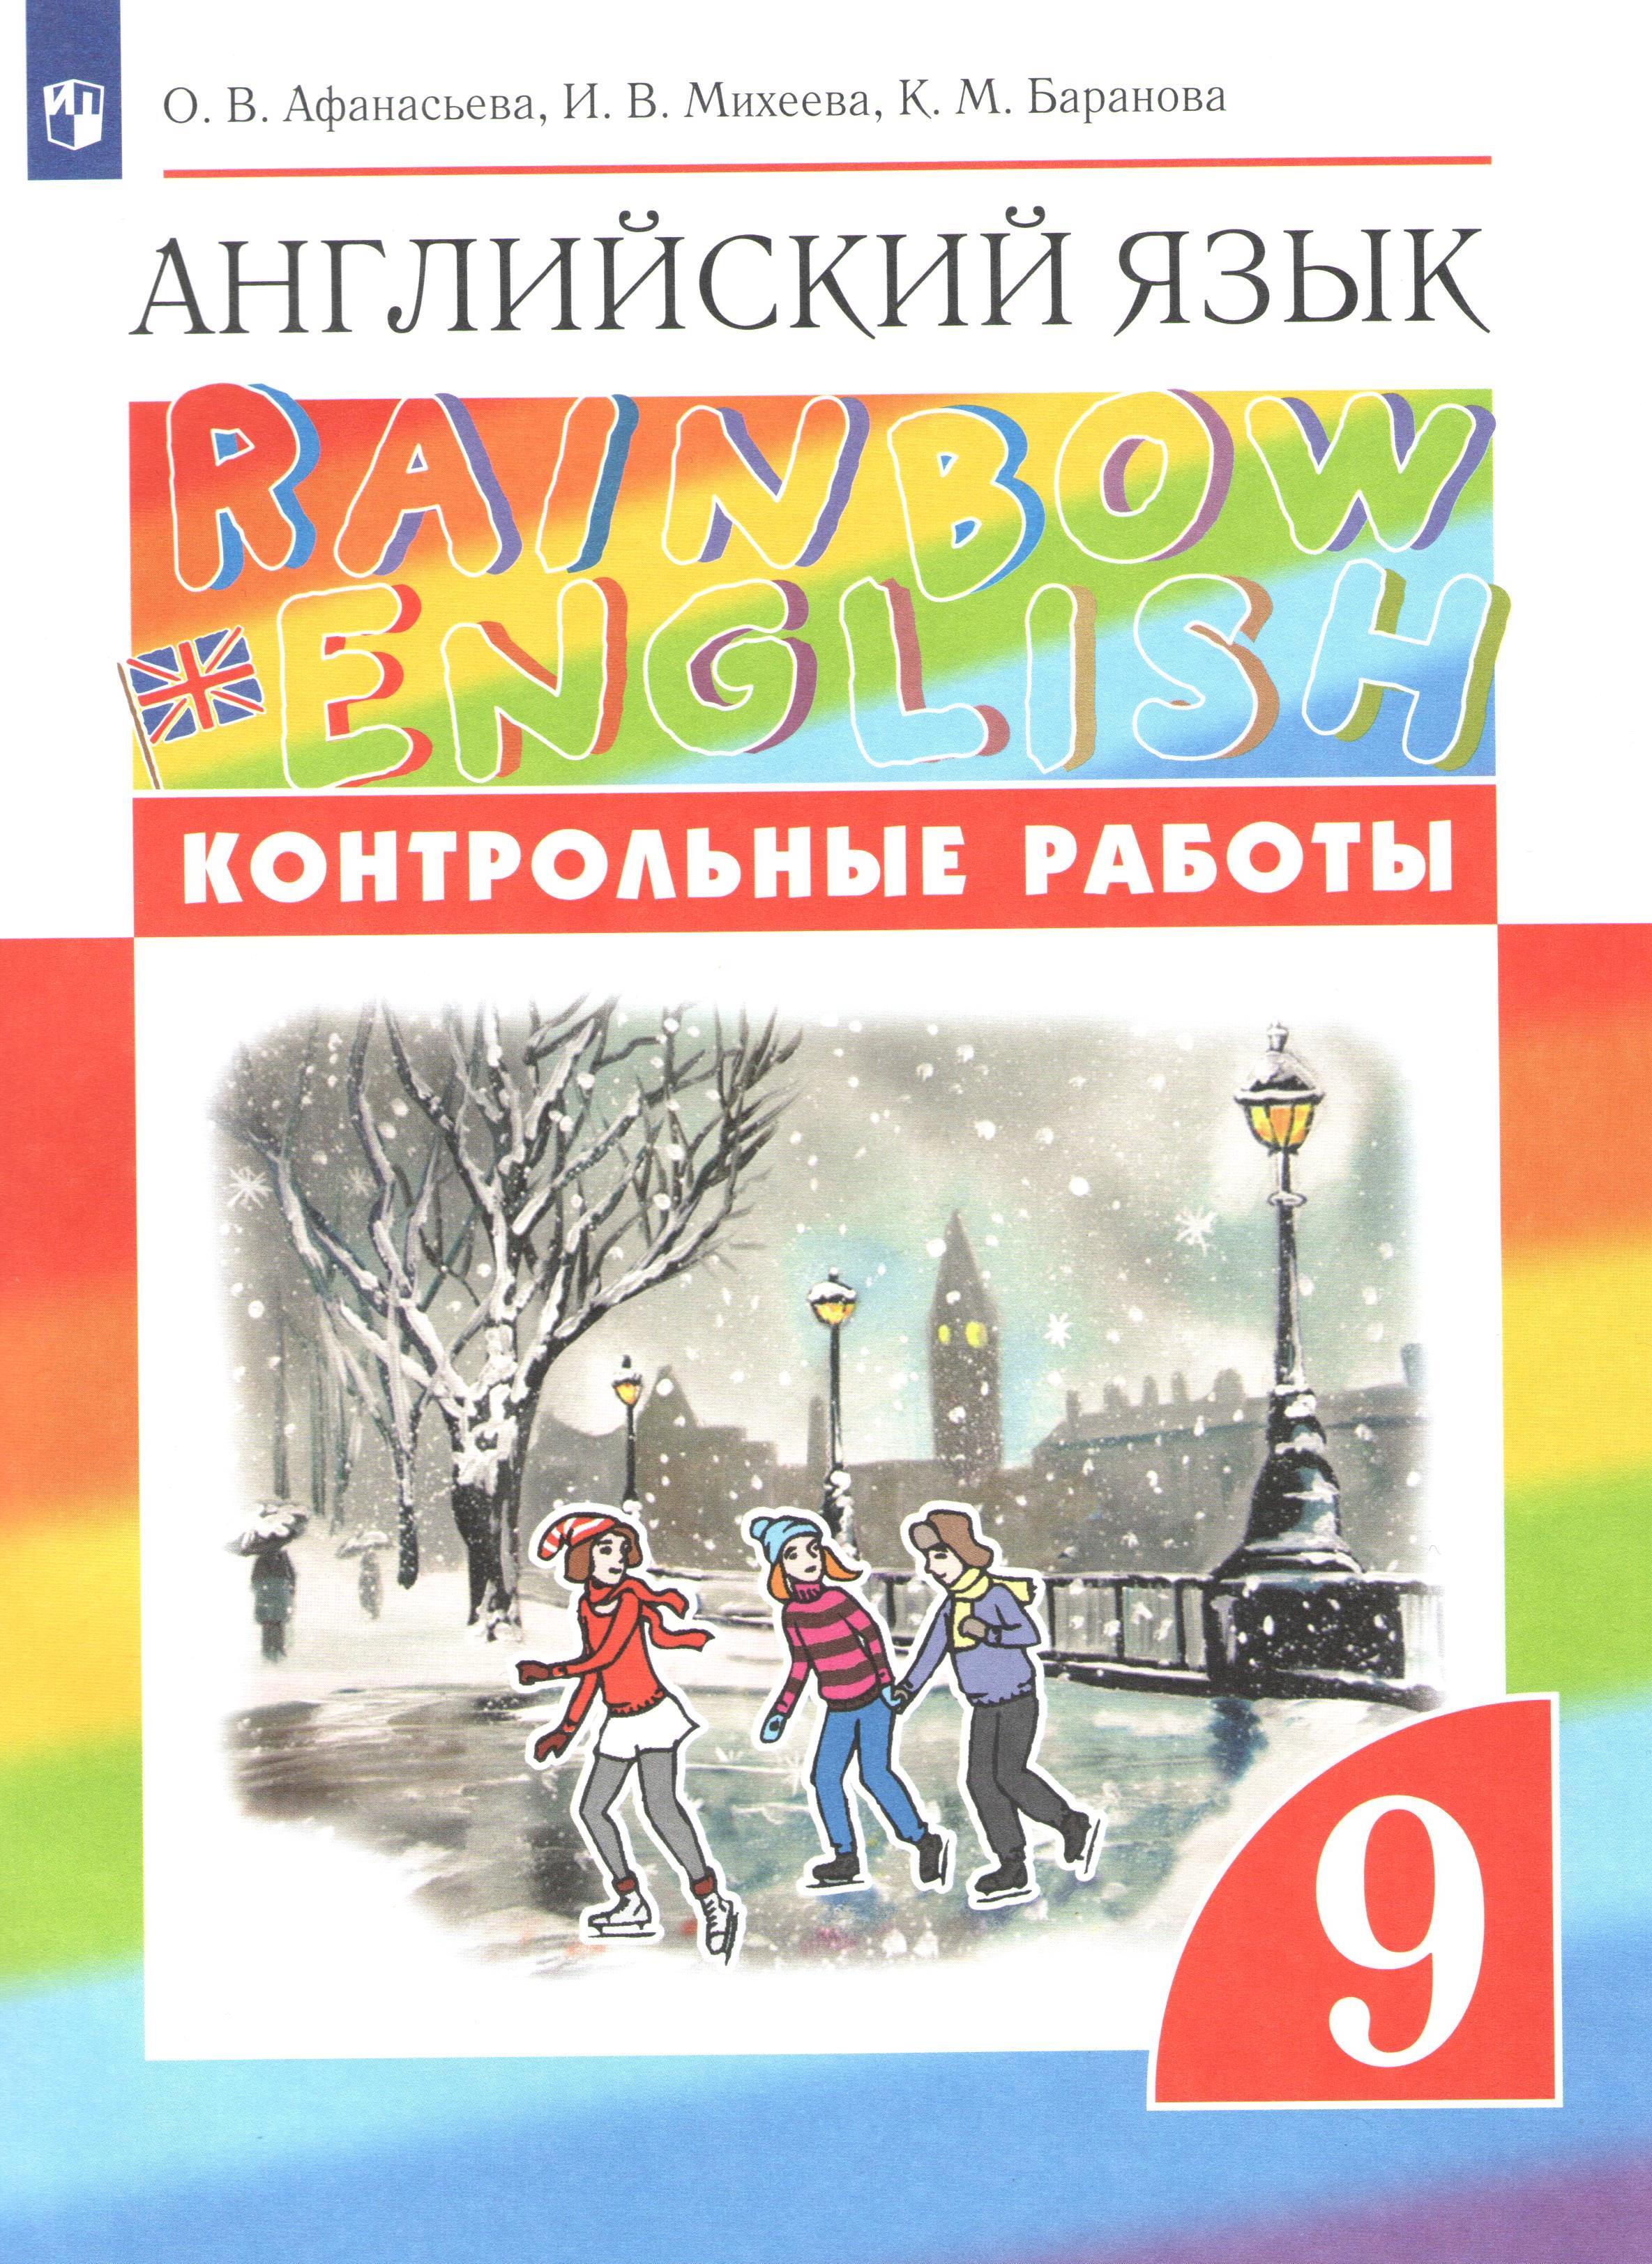 Английский язык Баранова. Книга Rainbow English отзывы. К М Баранова английский язык 5 класс. Английский язык Раинбов 9 класс ex5 р49. Учебник по английскому языку 9 рейнбоу